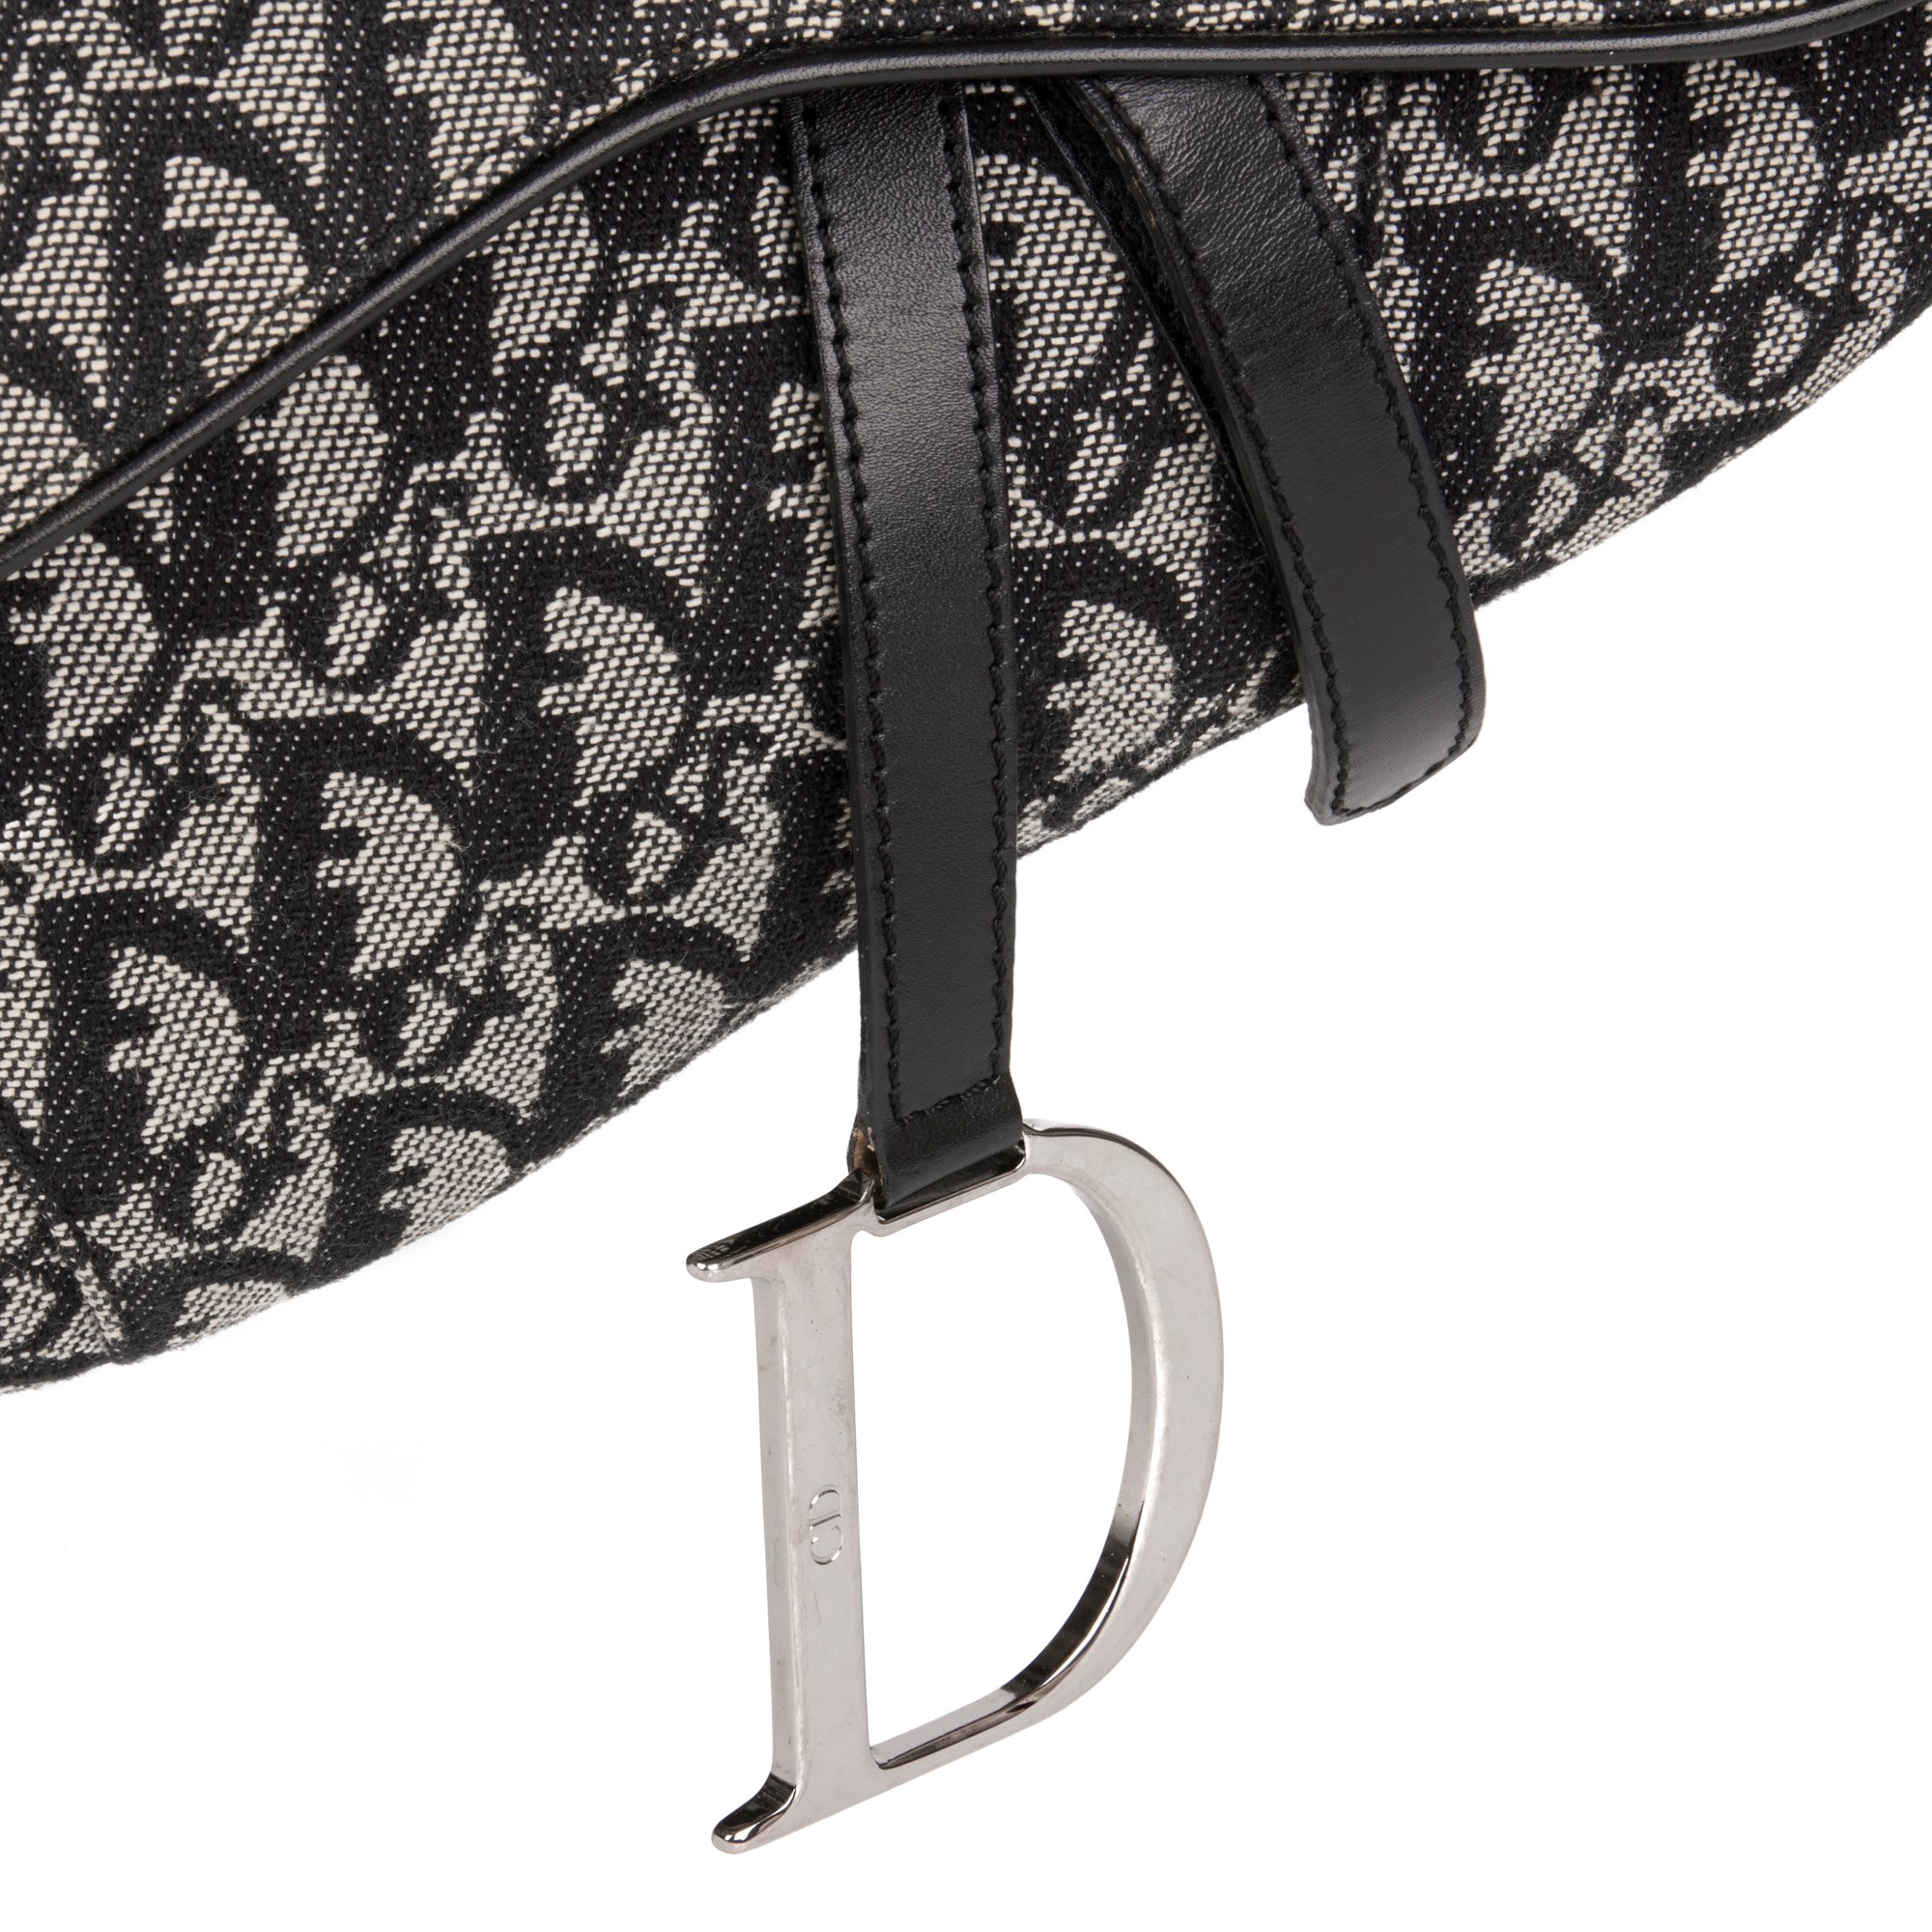 Christian Dior Black Monogram Canvas & Calfskin Leather Vintage Saddle Bag